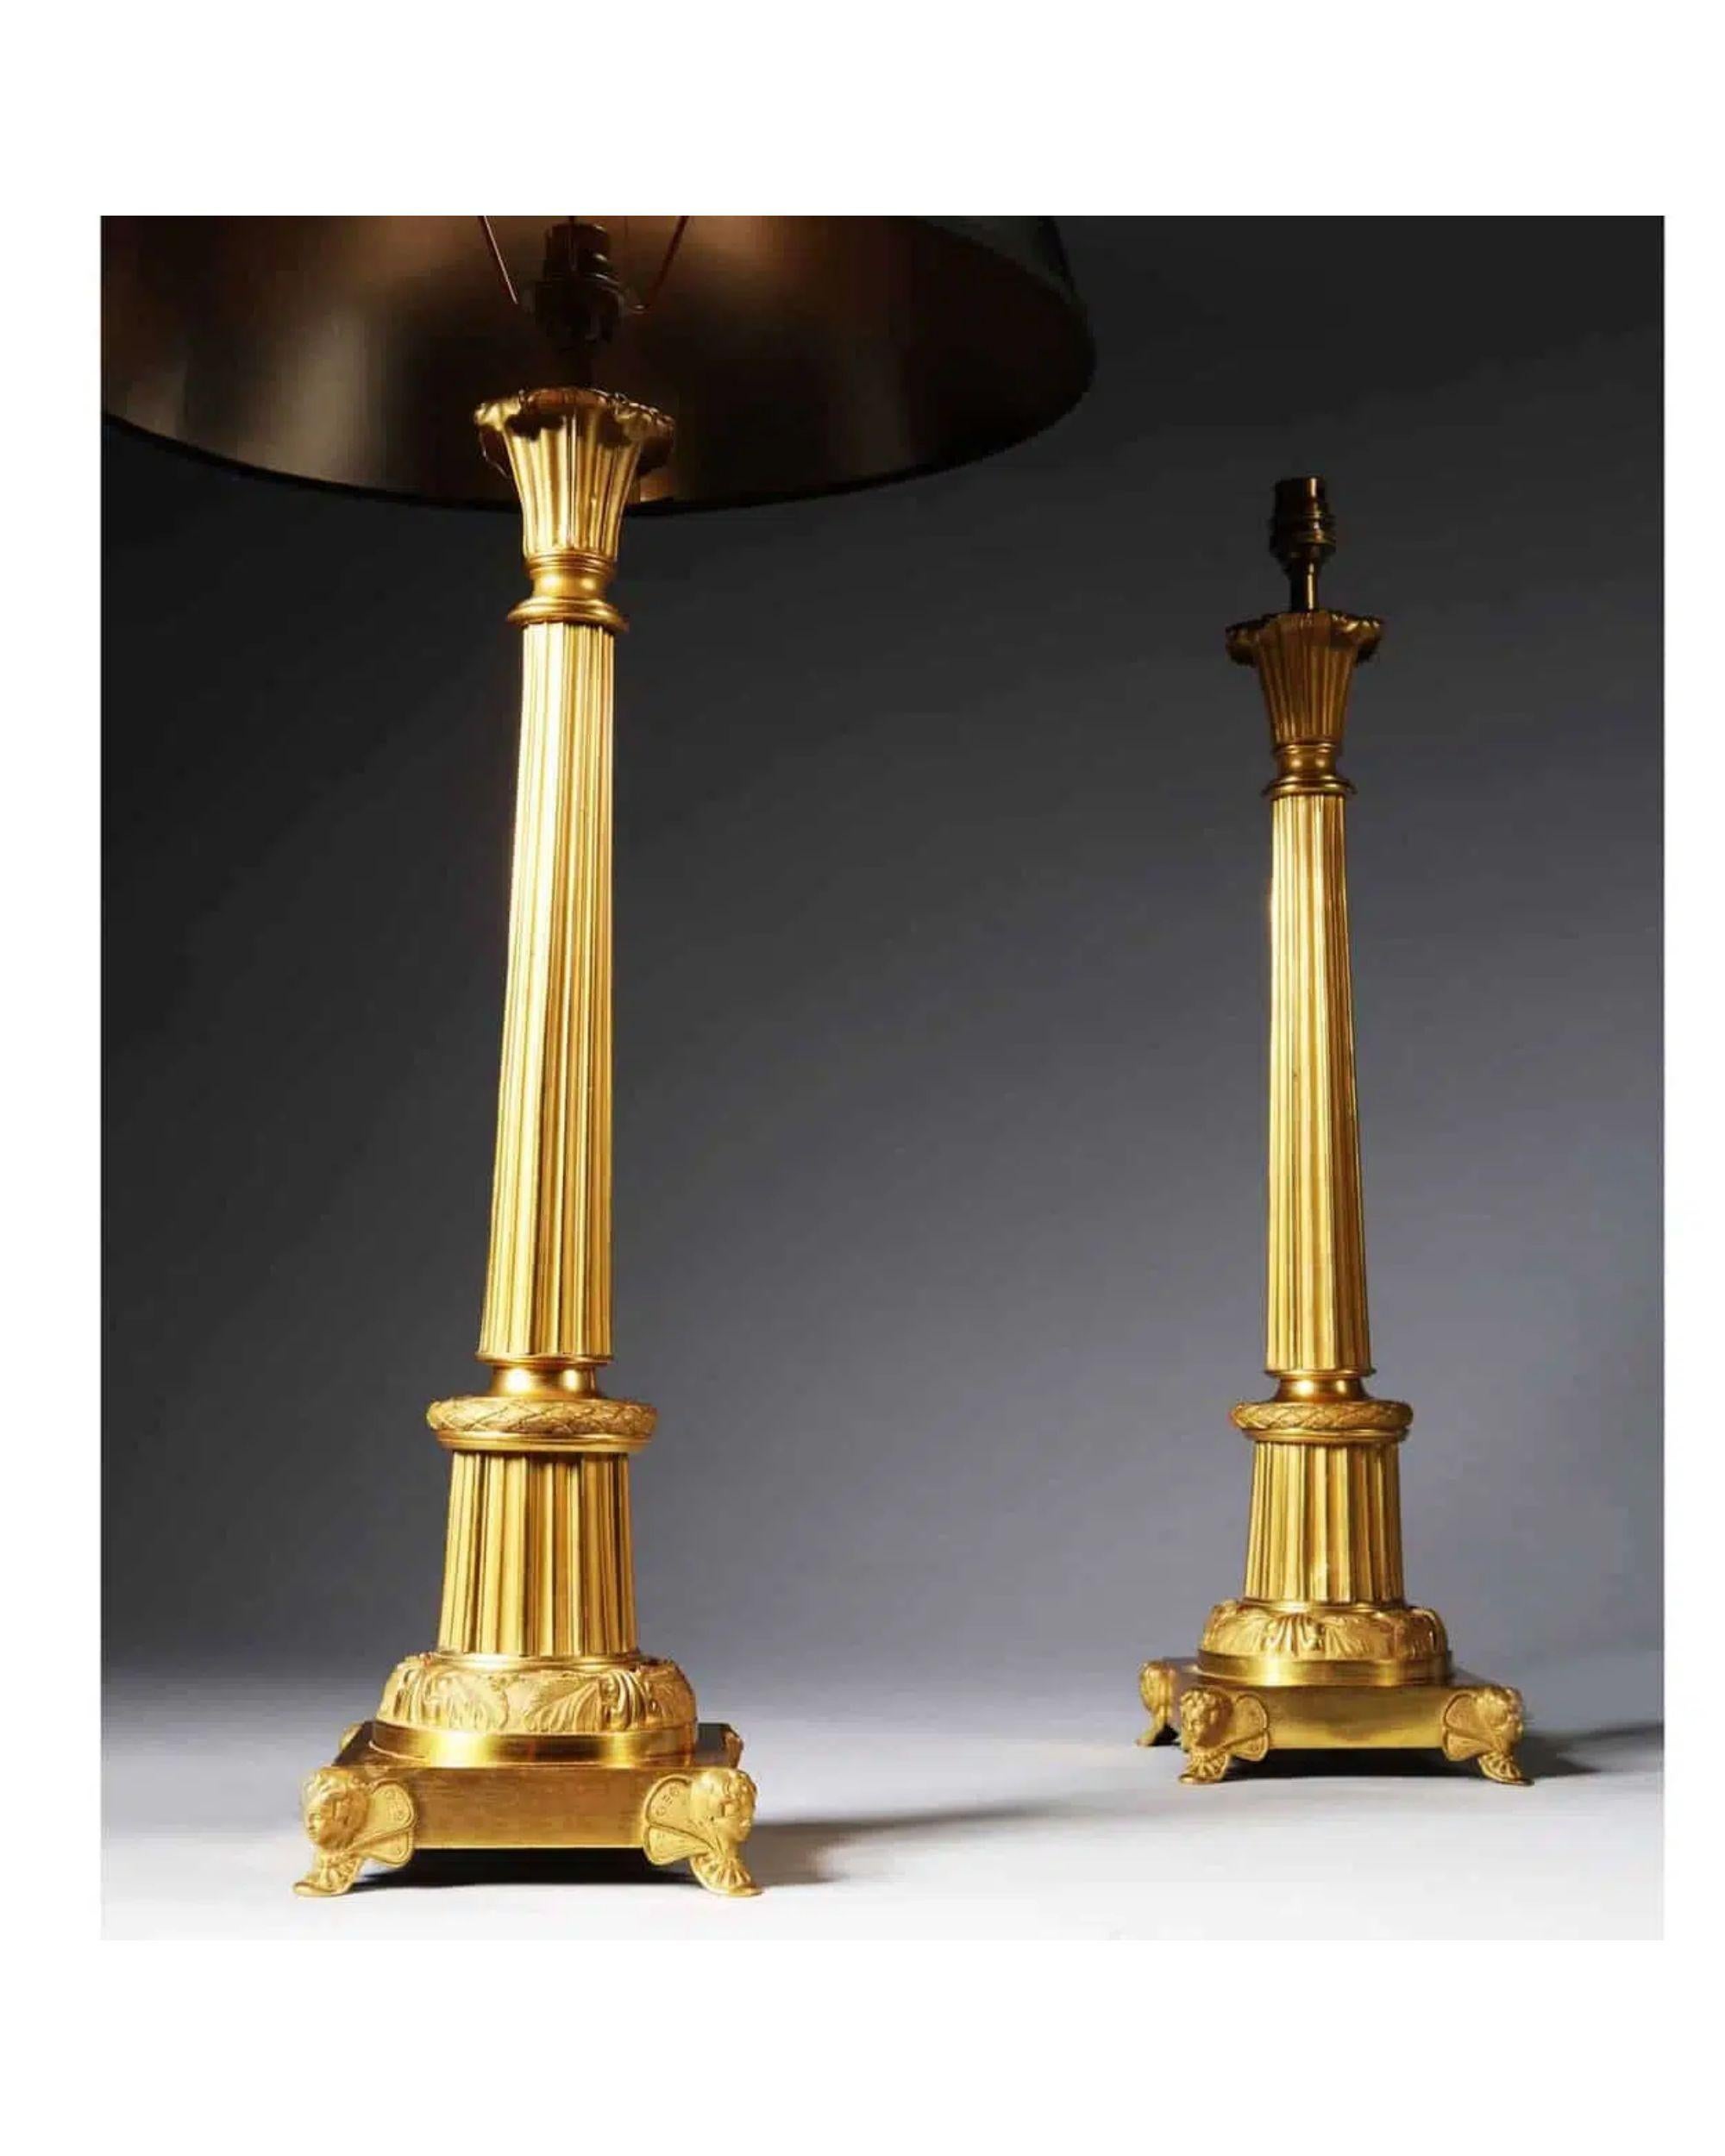 Paire de lampes à colonne Art Déco en bronze doré et tole antique.

Sur des bases carrées soutenues par des cupidons ailés, la colonne cannelée effilée aux reflets d'or bruni repose sur une monture circulaire en bronze à feuillage étagé et est